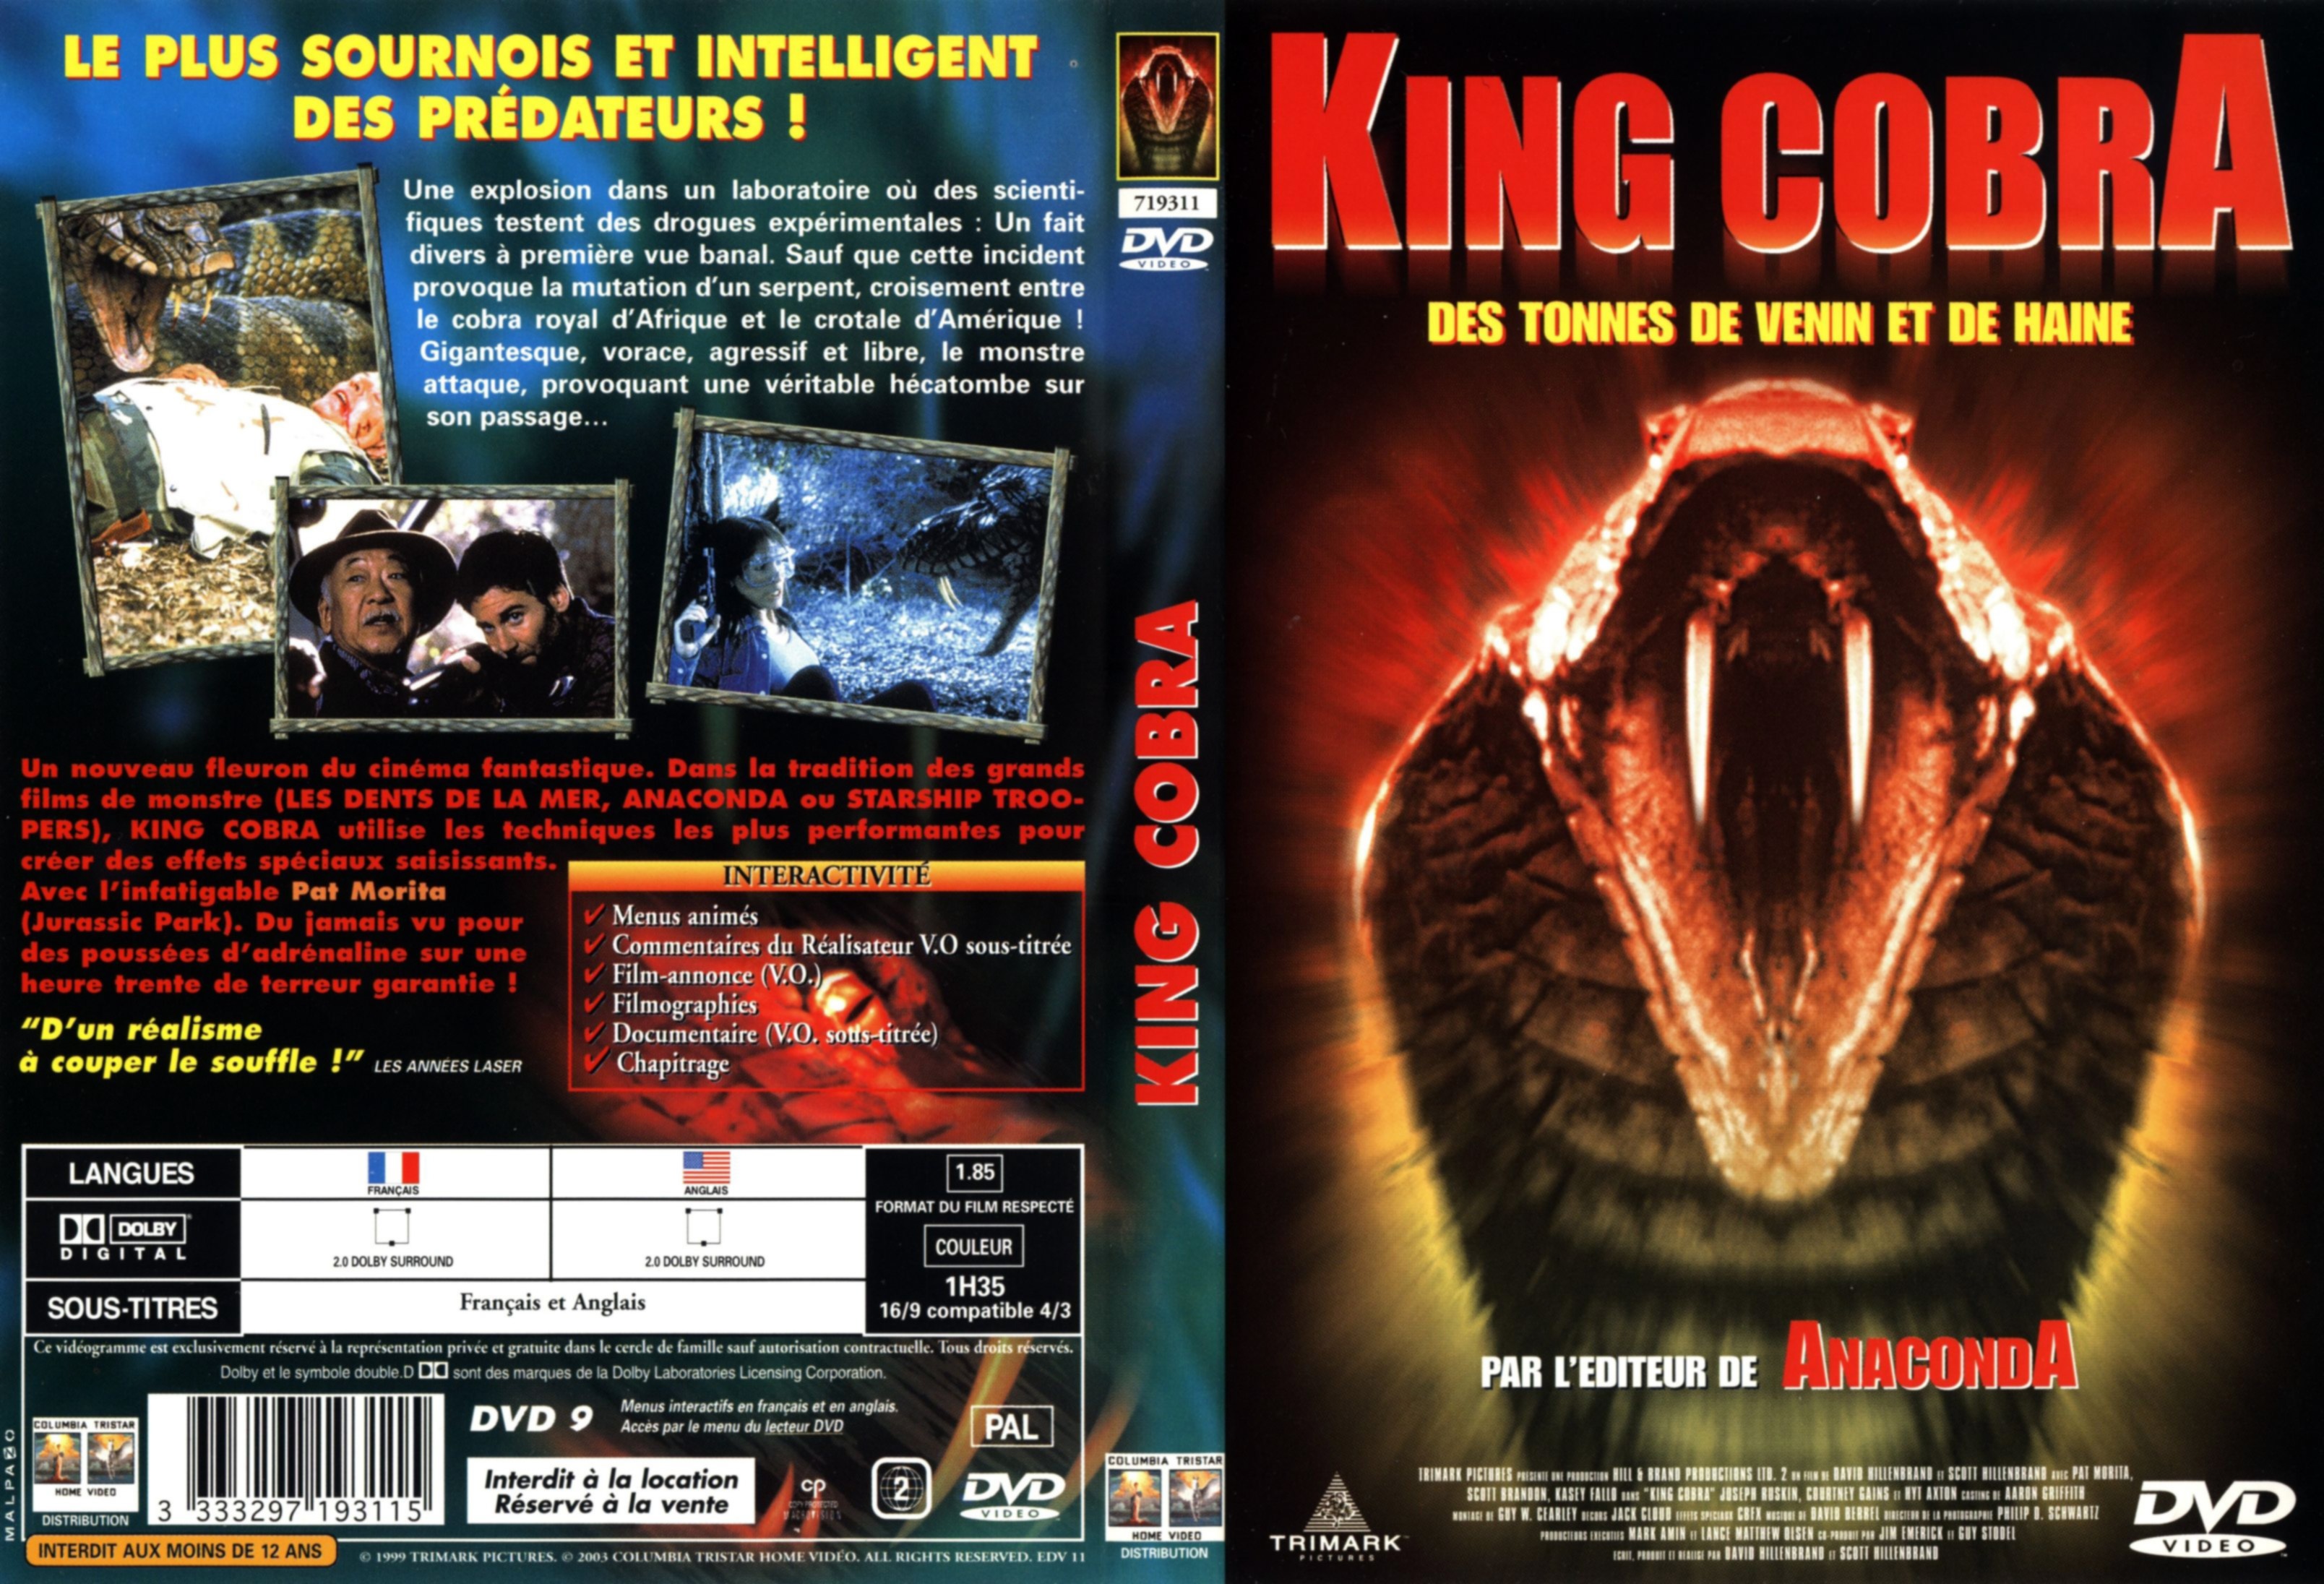 Jaquette DVD King Cobra v2